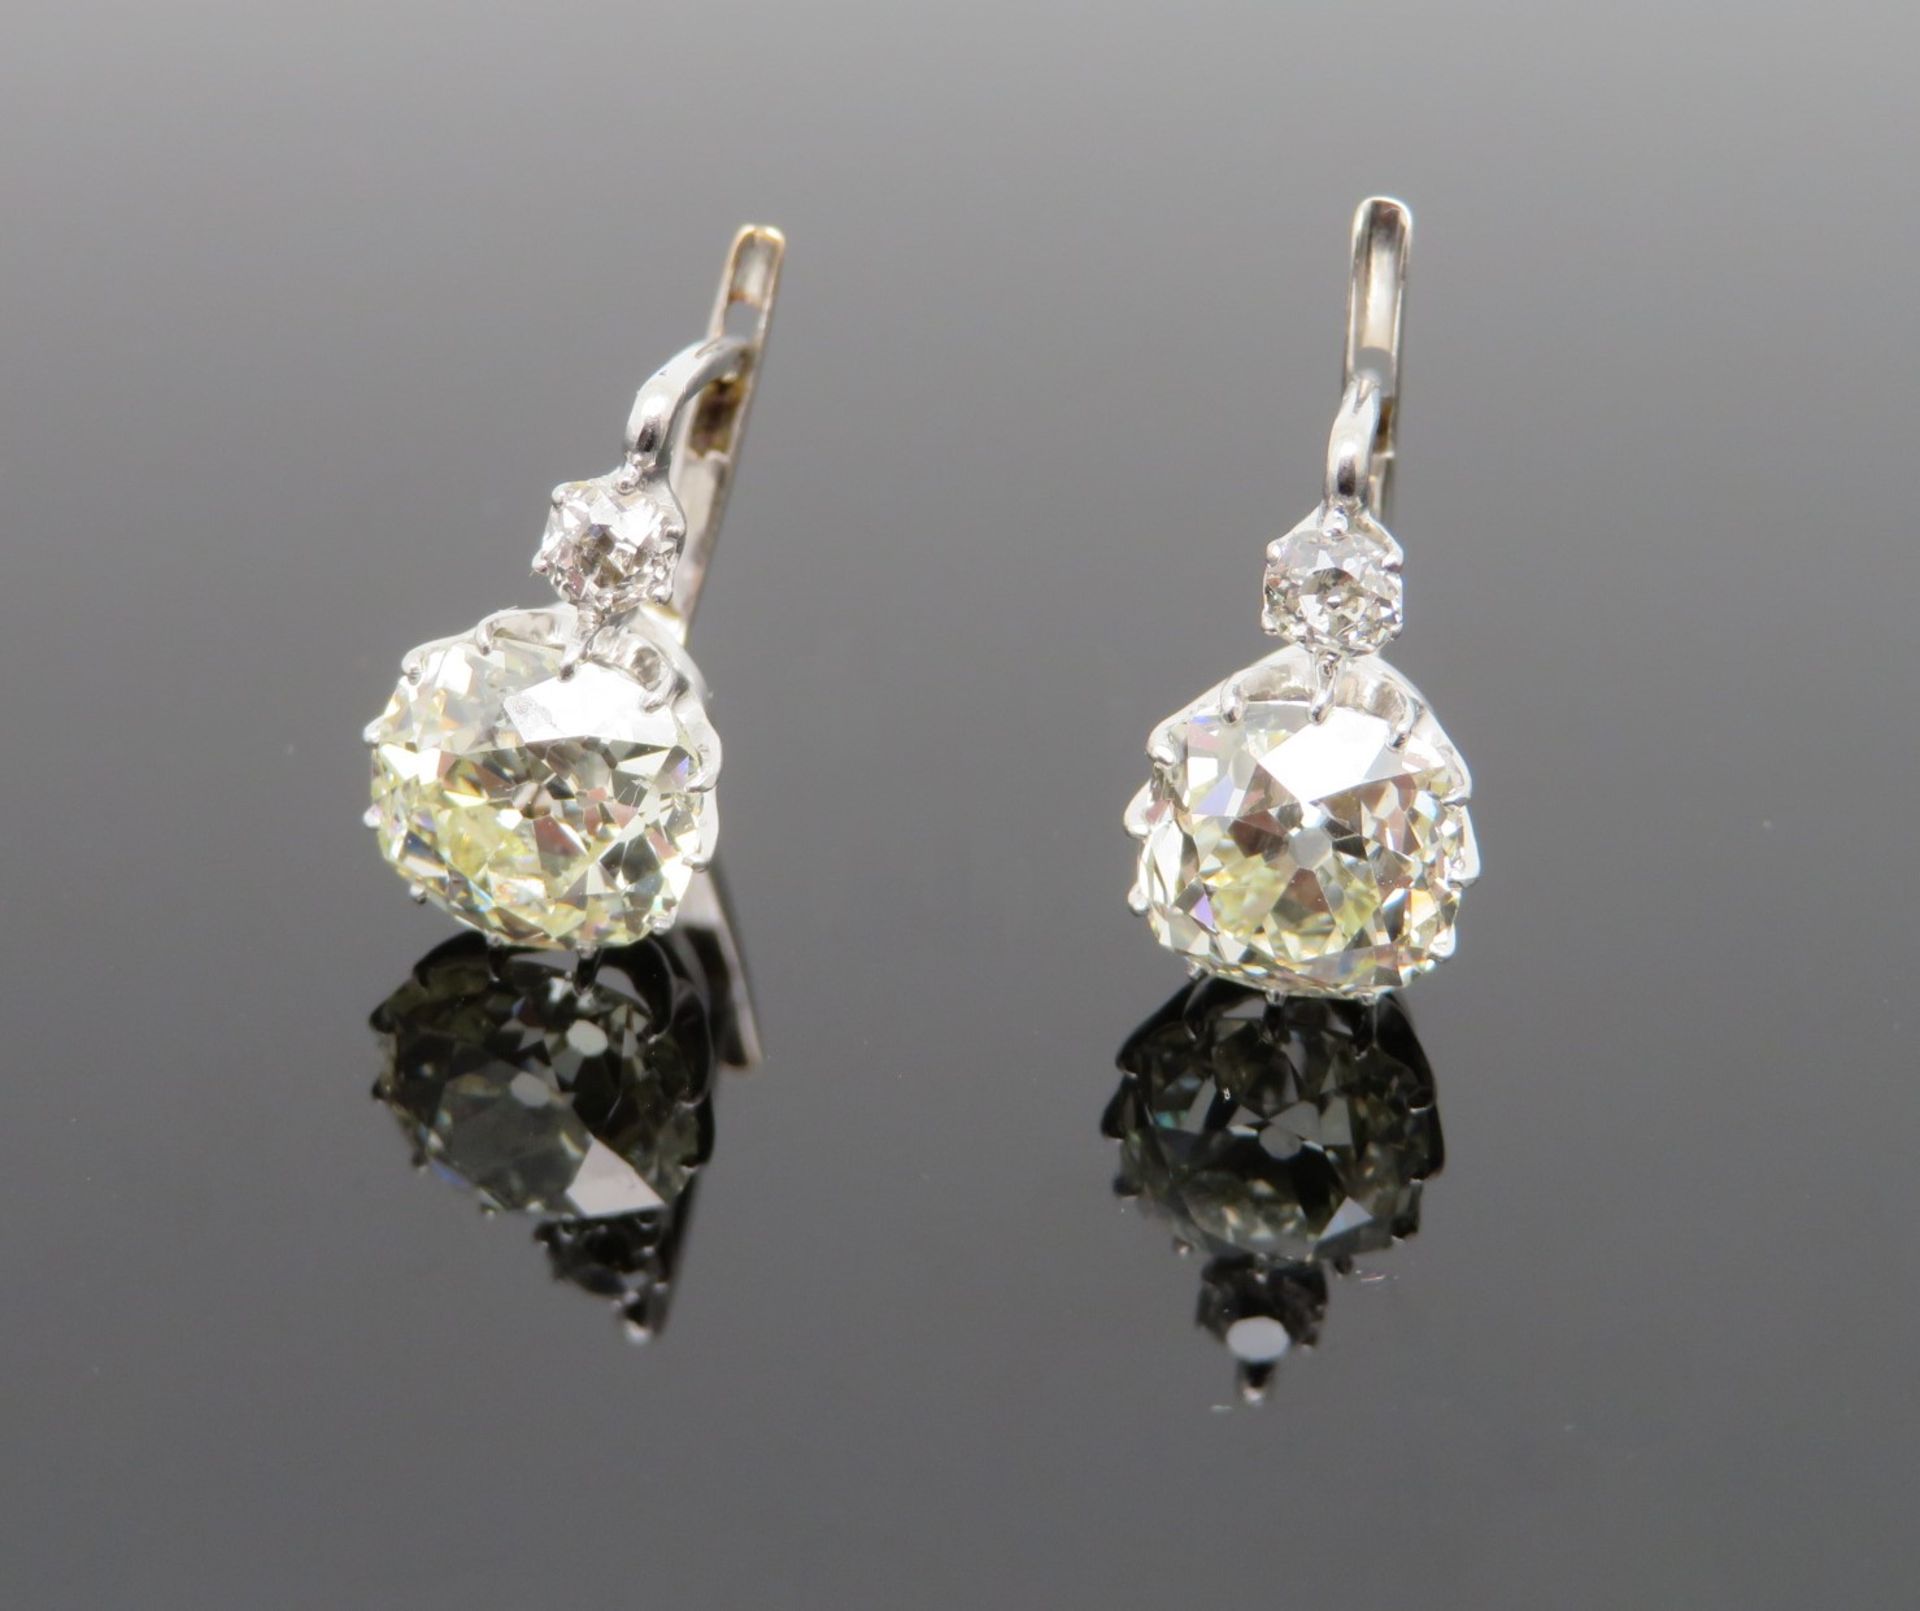 2 hochkarätige Ohrhänger, 4 Altschliffdiamanten, zus.ca. 3 ct, Weißgold 585/000, geprüft, l 1,7 cm, - Bild 2 aus 3